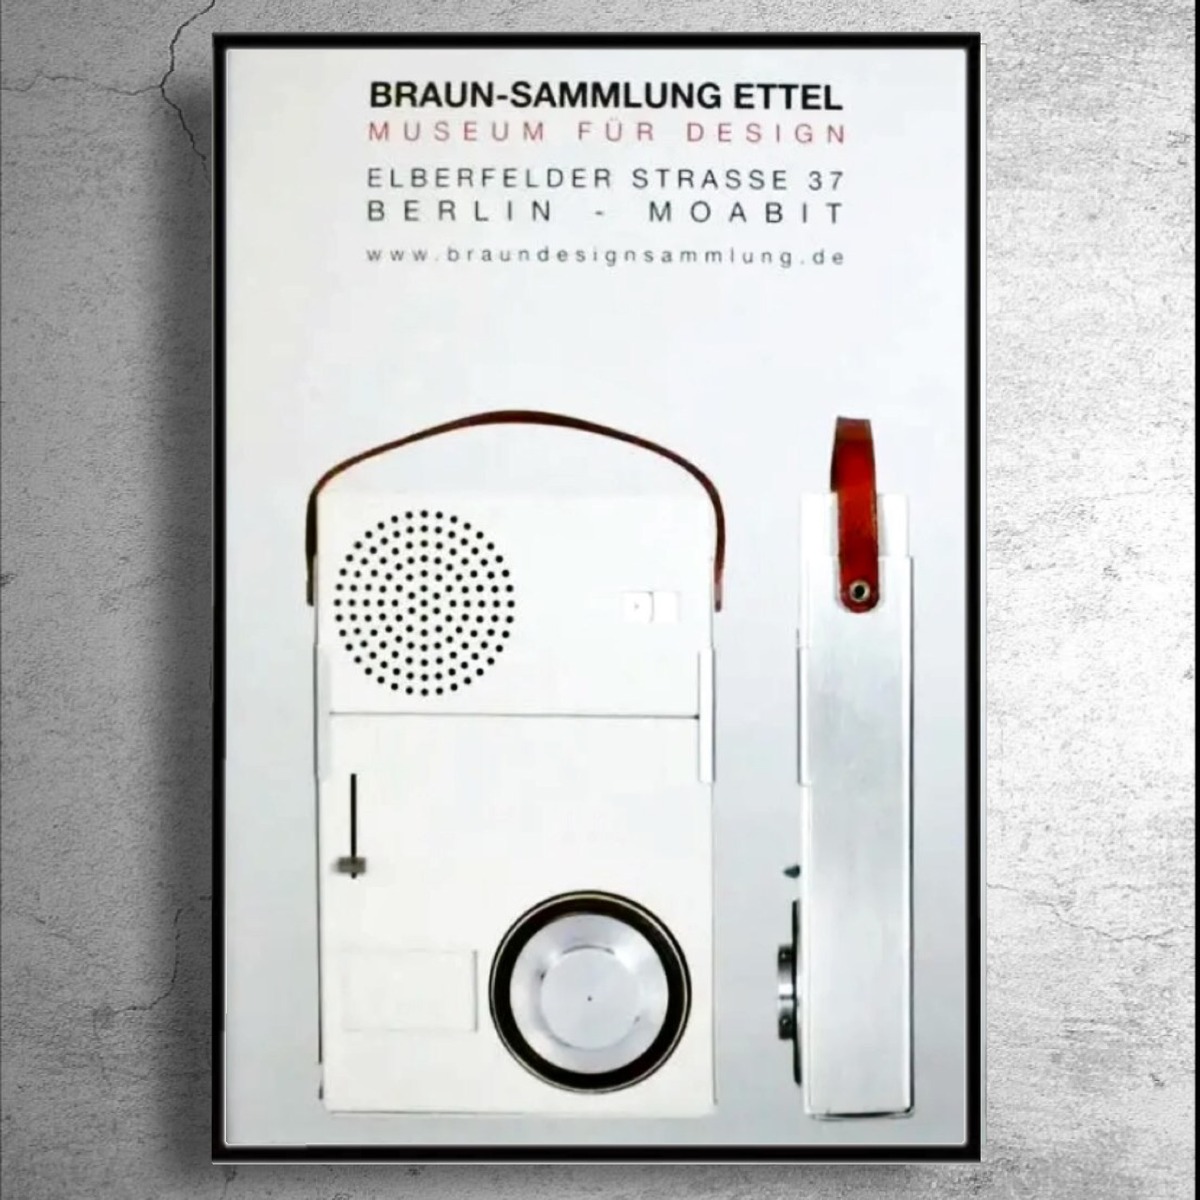 BRAUN ディーター・ラムスデザイン』ドイツでの展示ポスター/ブラウン-